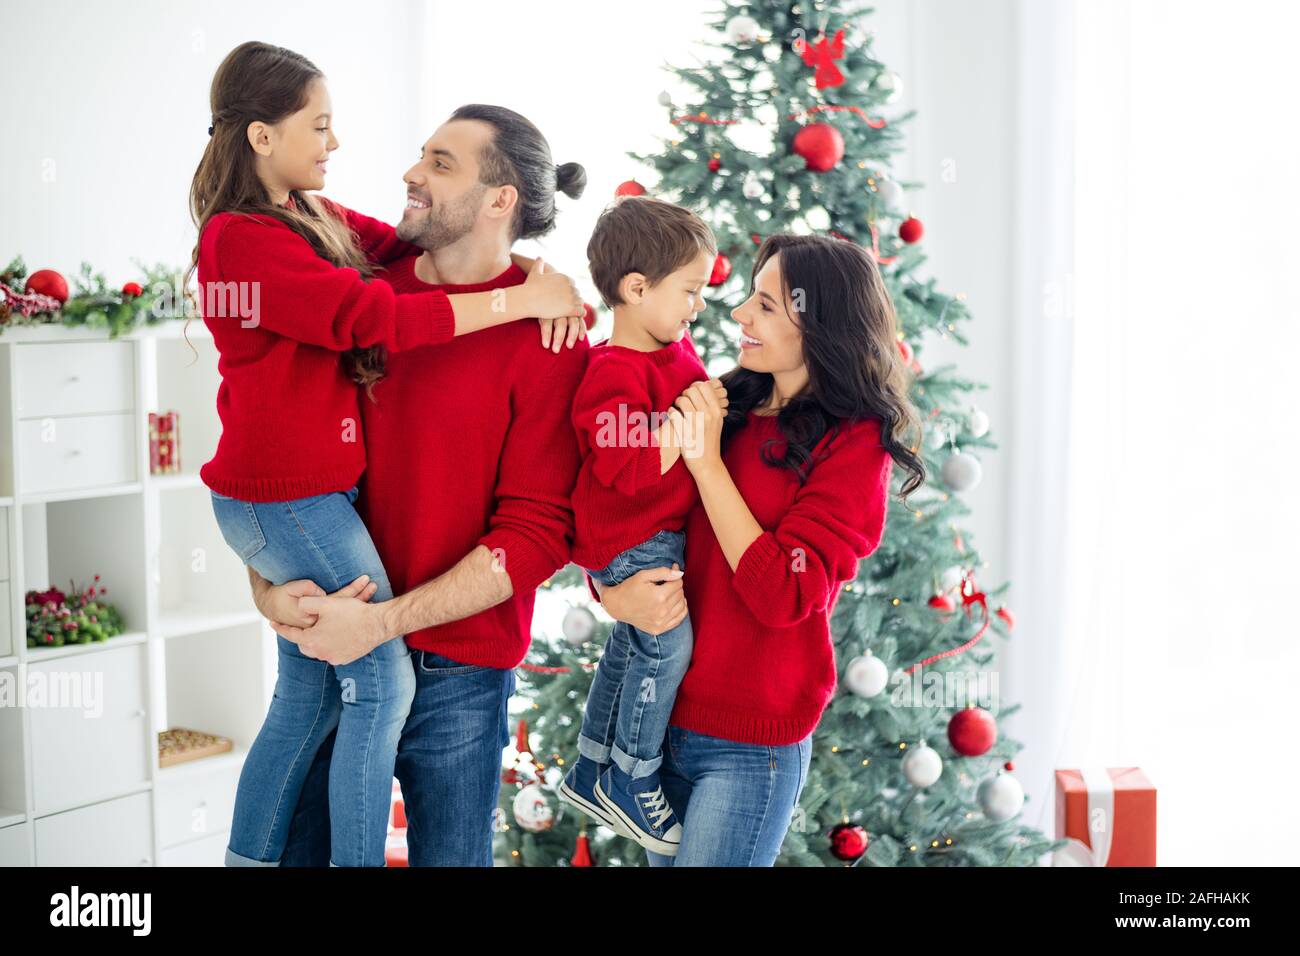 Profil Seite Foto von großen ful Familie bezaubernde Mama Papa Schulmädchen junge genießen Weihnachten x-mas Ferien im Haus mit neujahr Dekorationen Stockfoto